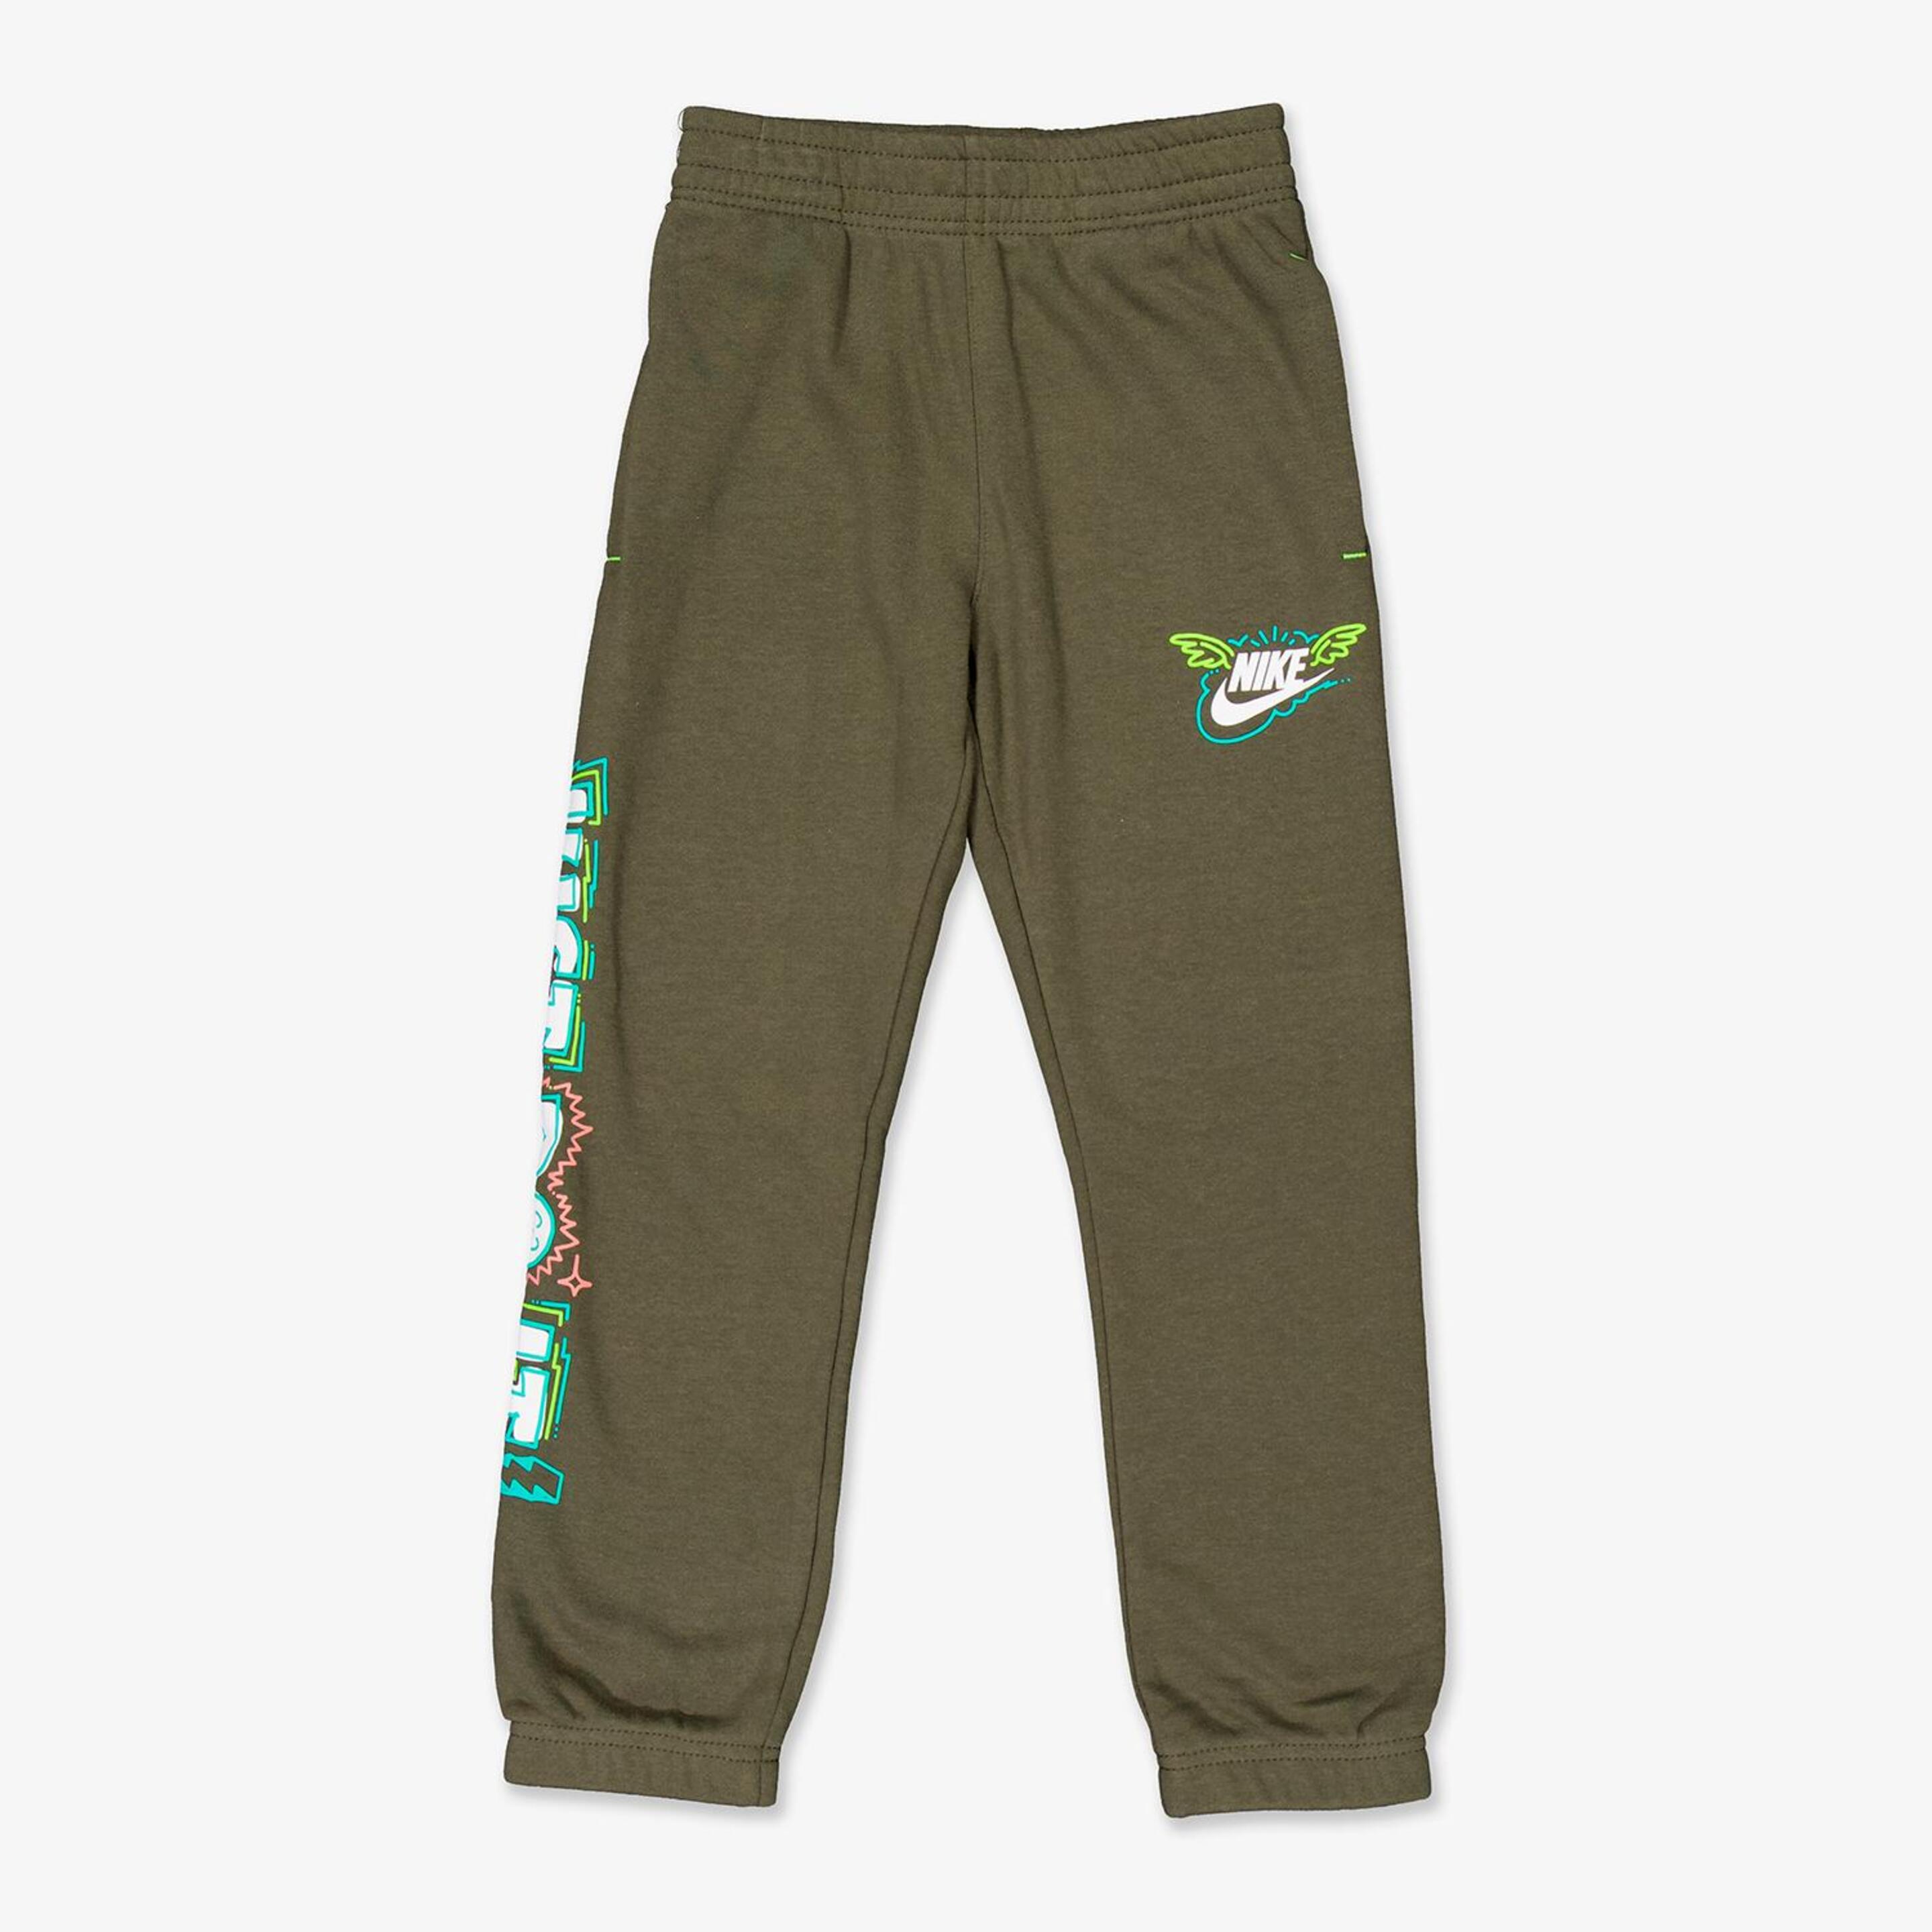 Pantalón Nike - verde - Pantalón Niño